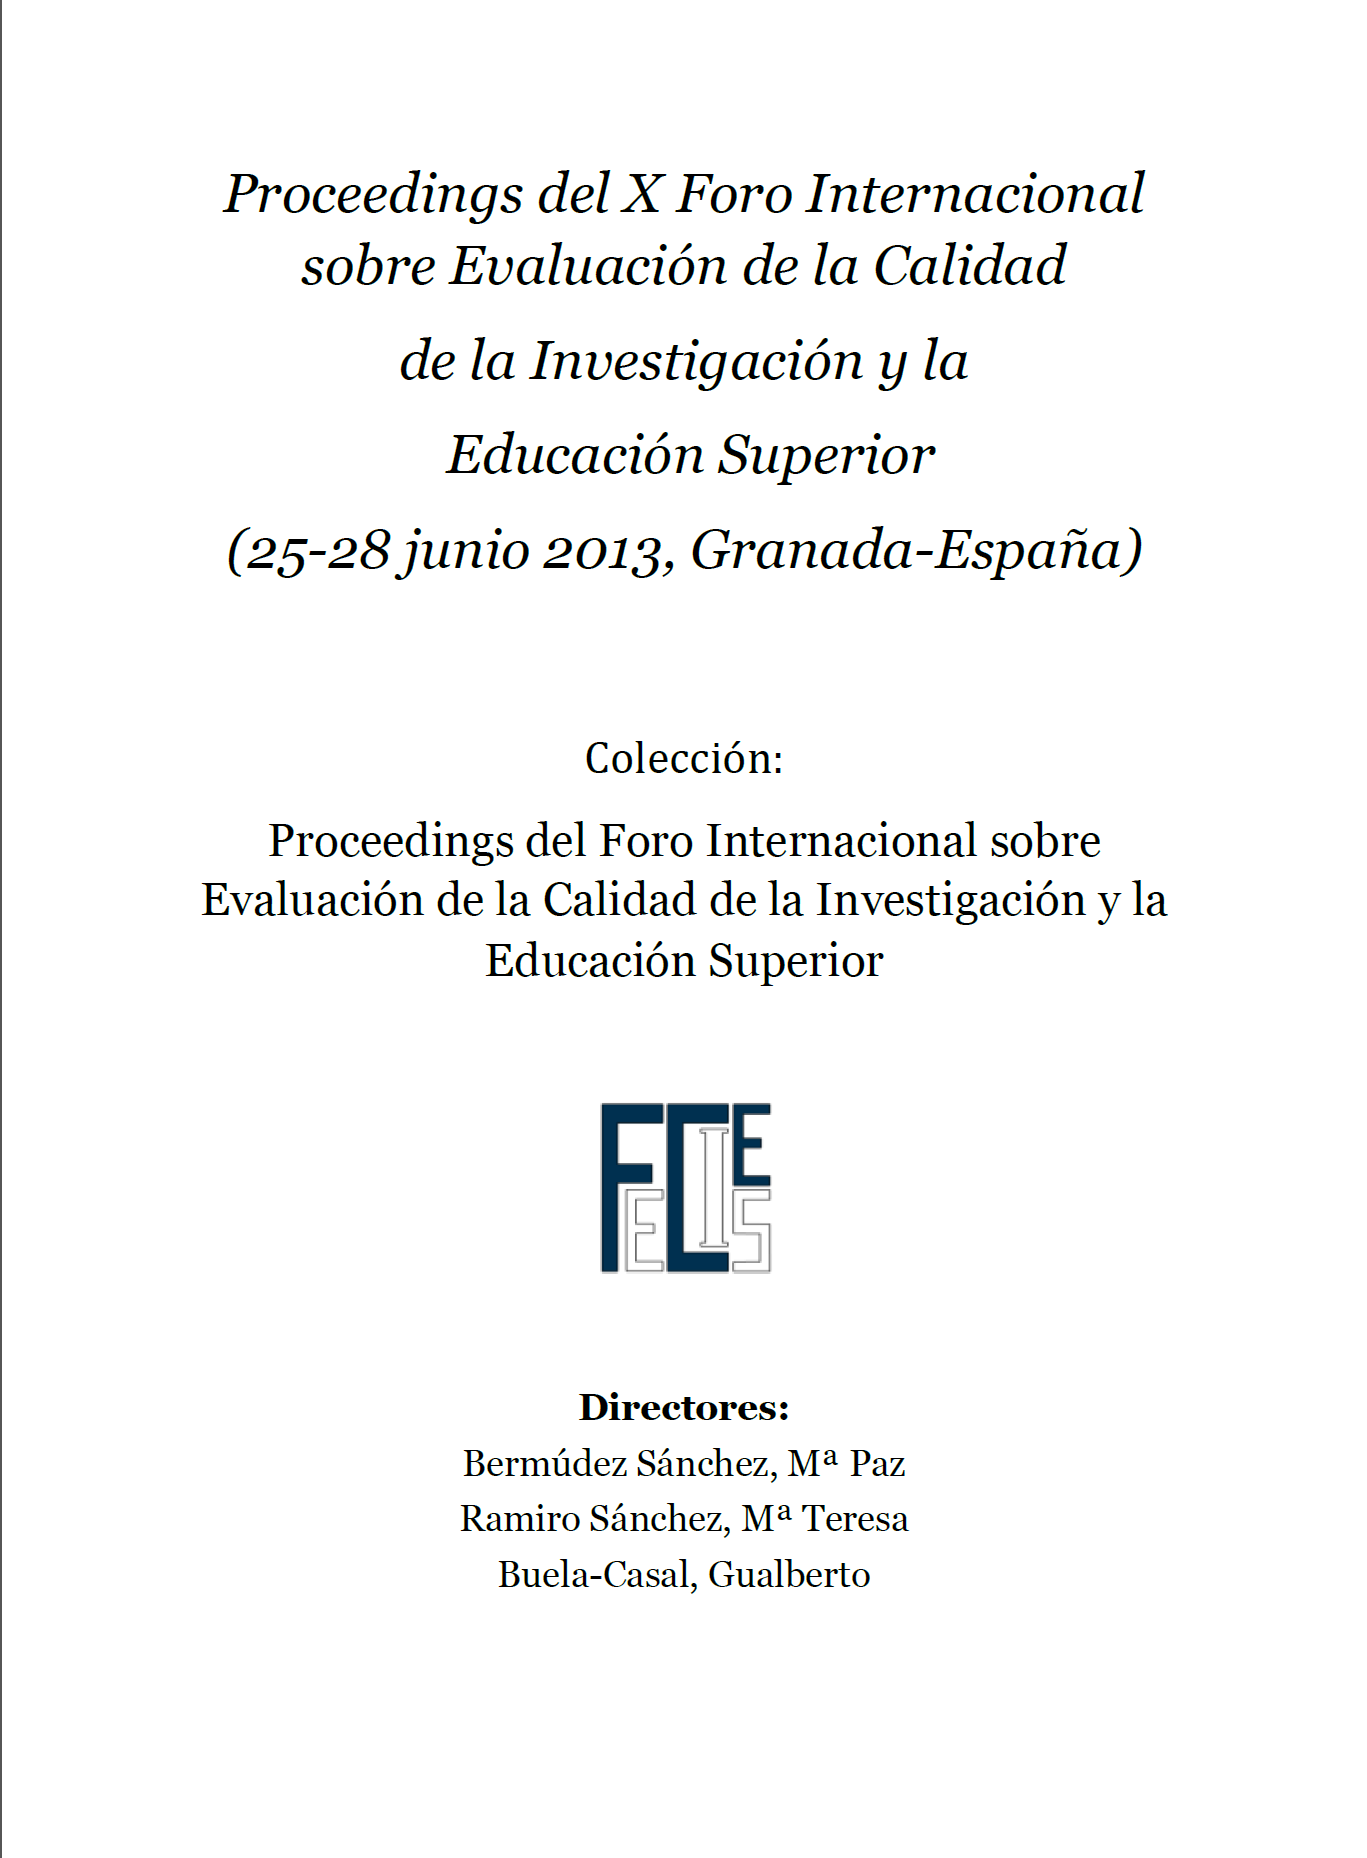 Imagen de portada del libro Proceedings del X Foro Internacional sobre Evaluación de la Calidad de la Investigación y la Educación Superior (25-28 junio 2013, Granada-España)